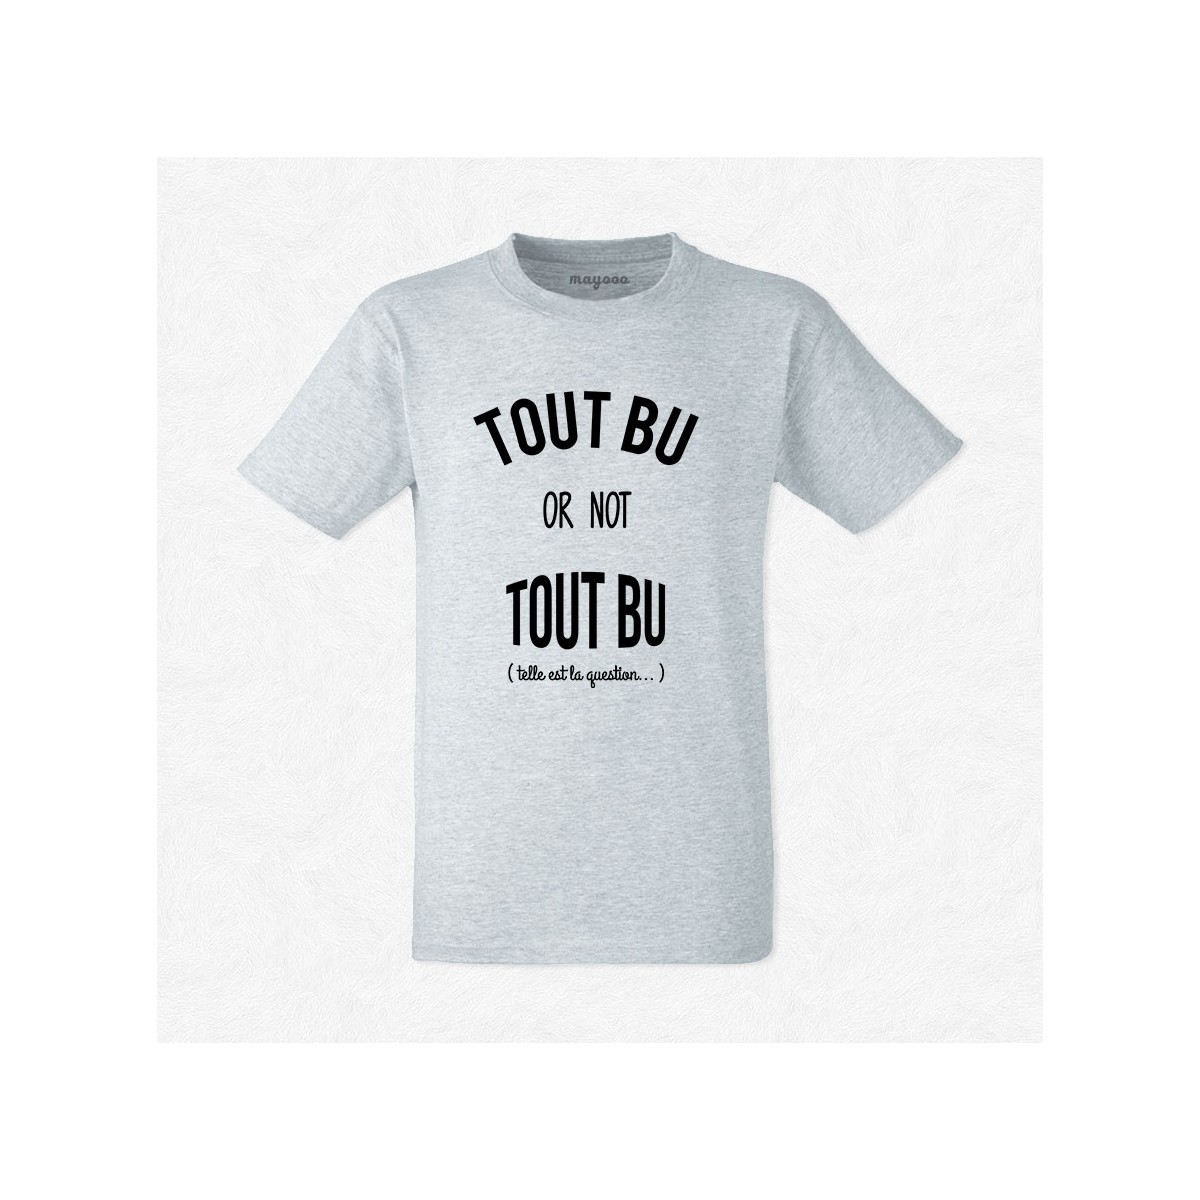 T-shirt Tout bu or not tout bu